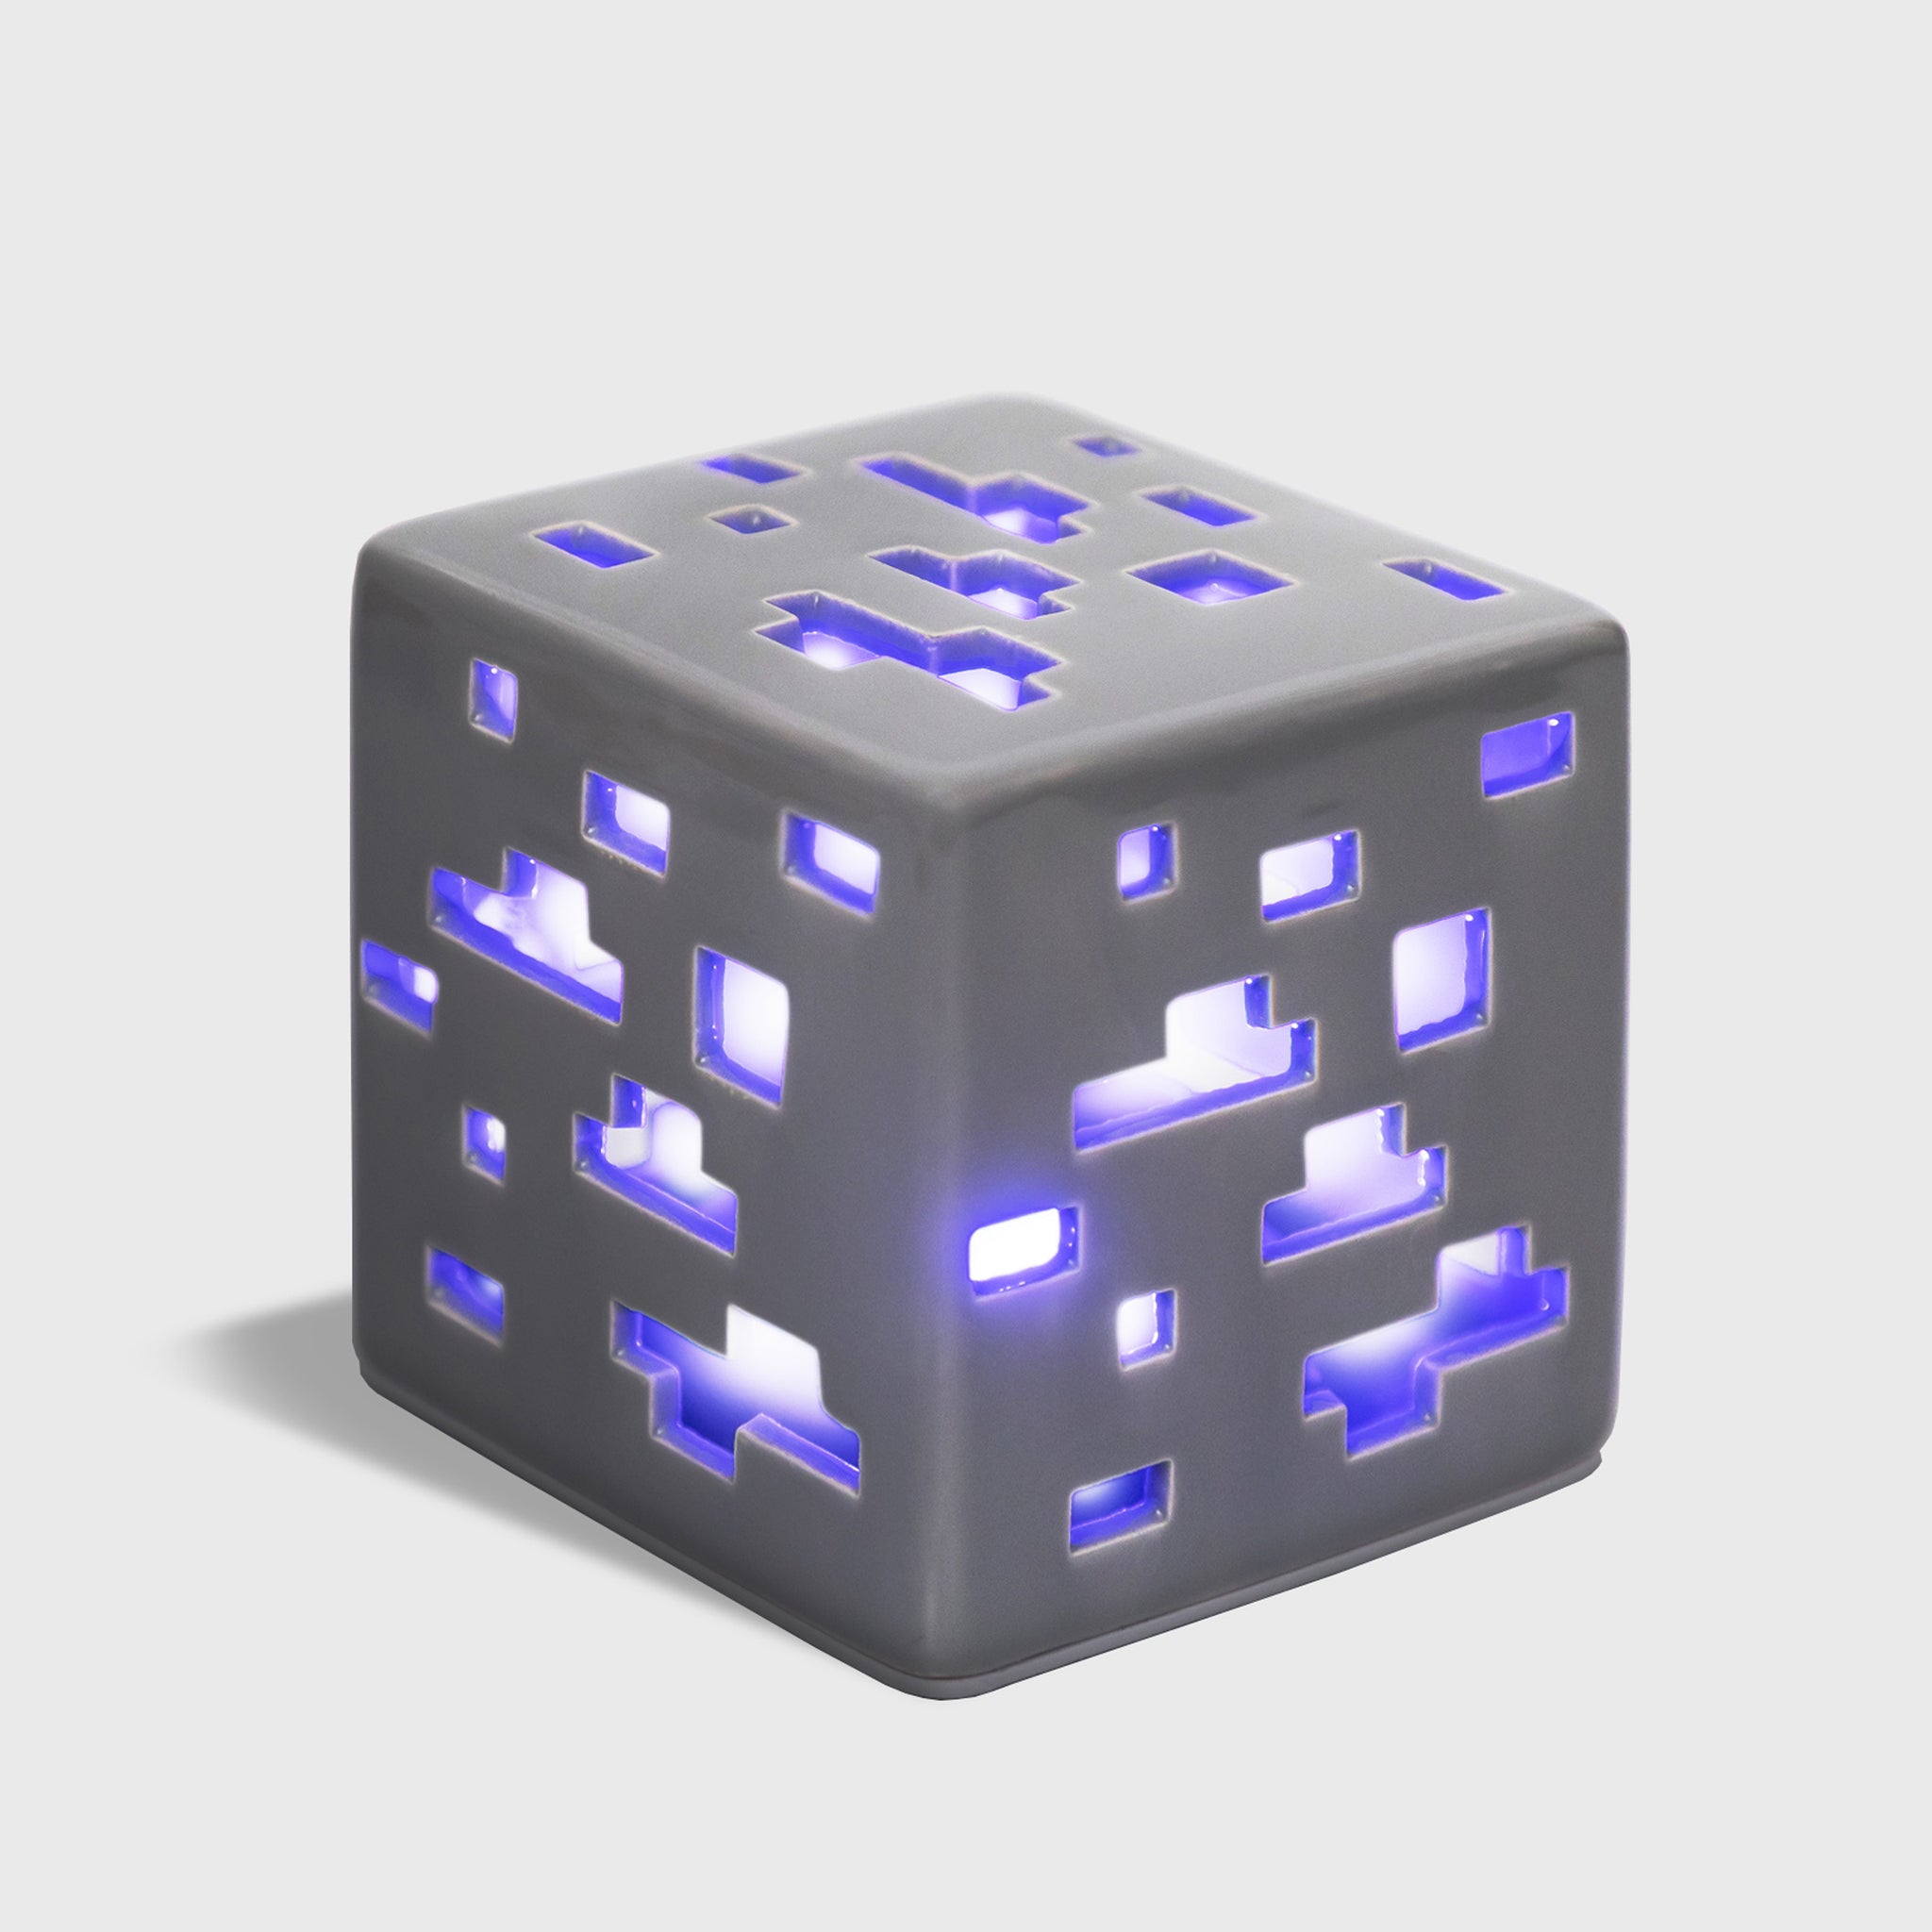 Kviksølv Begrænsninger utilsigtet hændelse Minecraft Ceramic Ore Block LED Mood Light – Ukonic